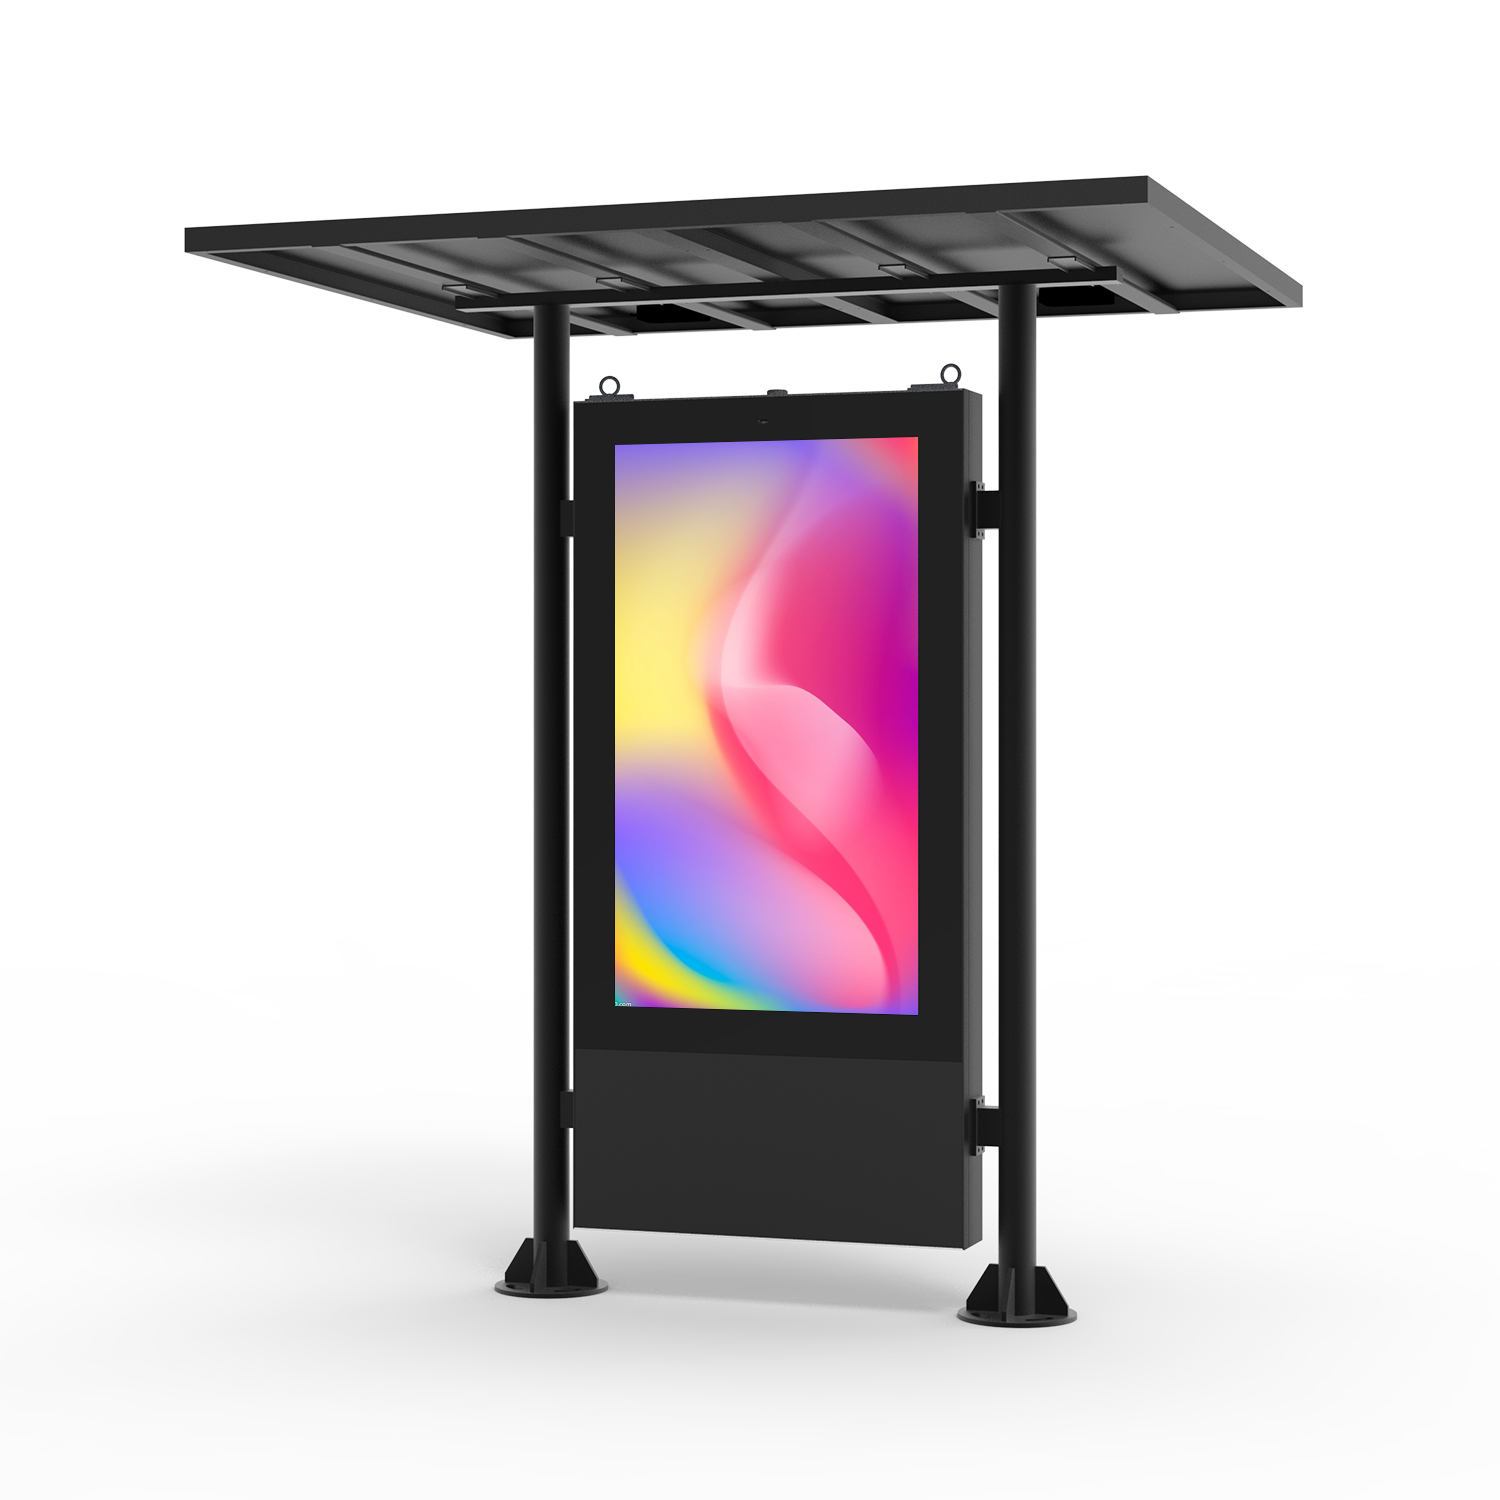 لافتات رقمية LCD ذكية تعمل بالطاقة الشمسية